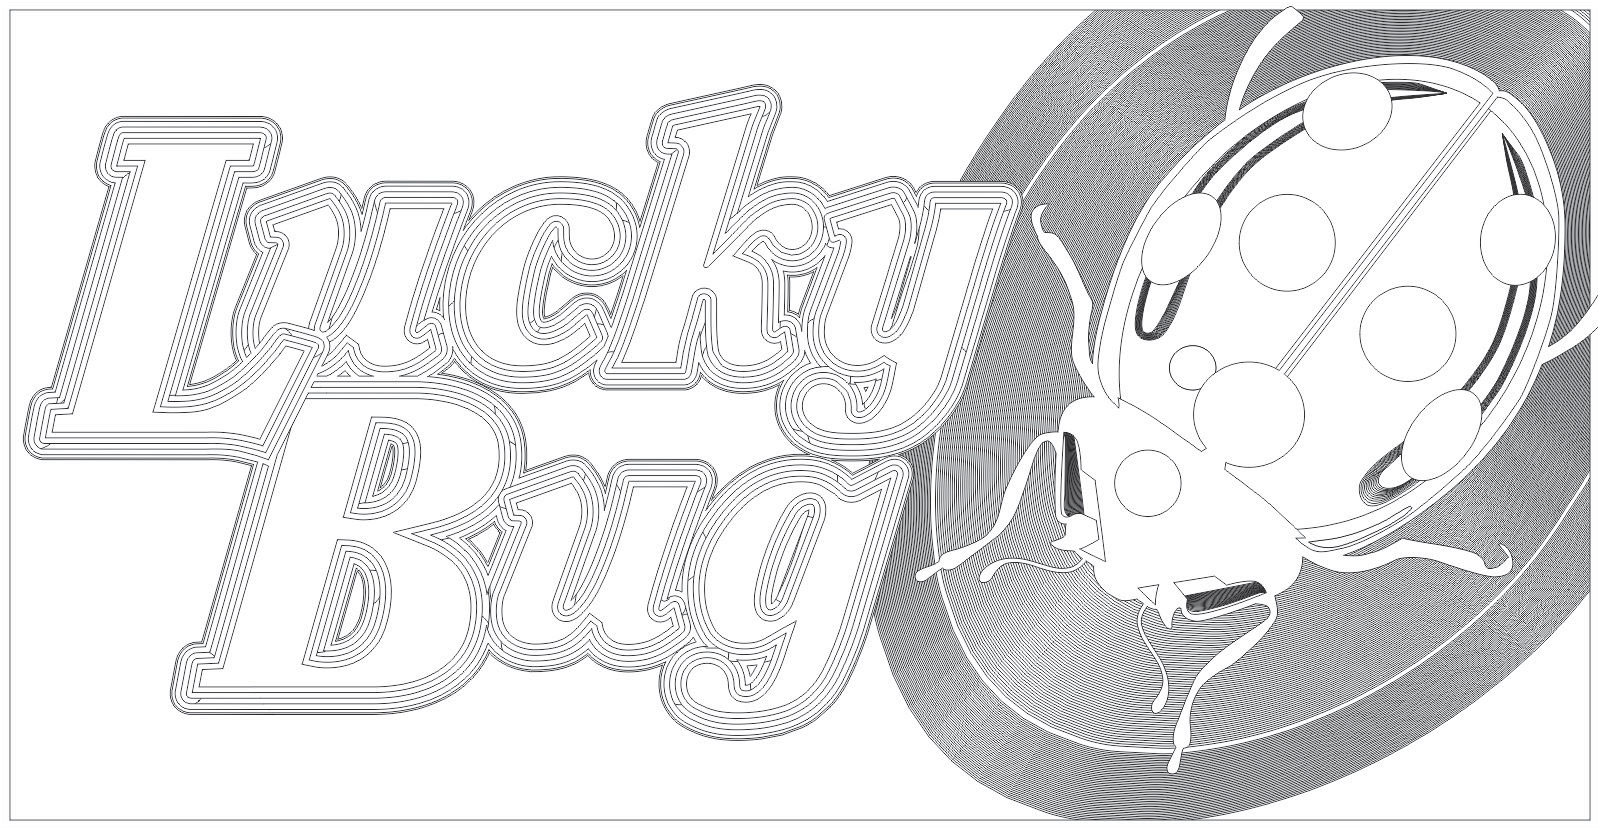 Lucky Bug